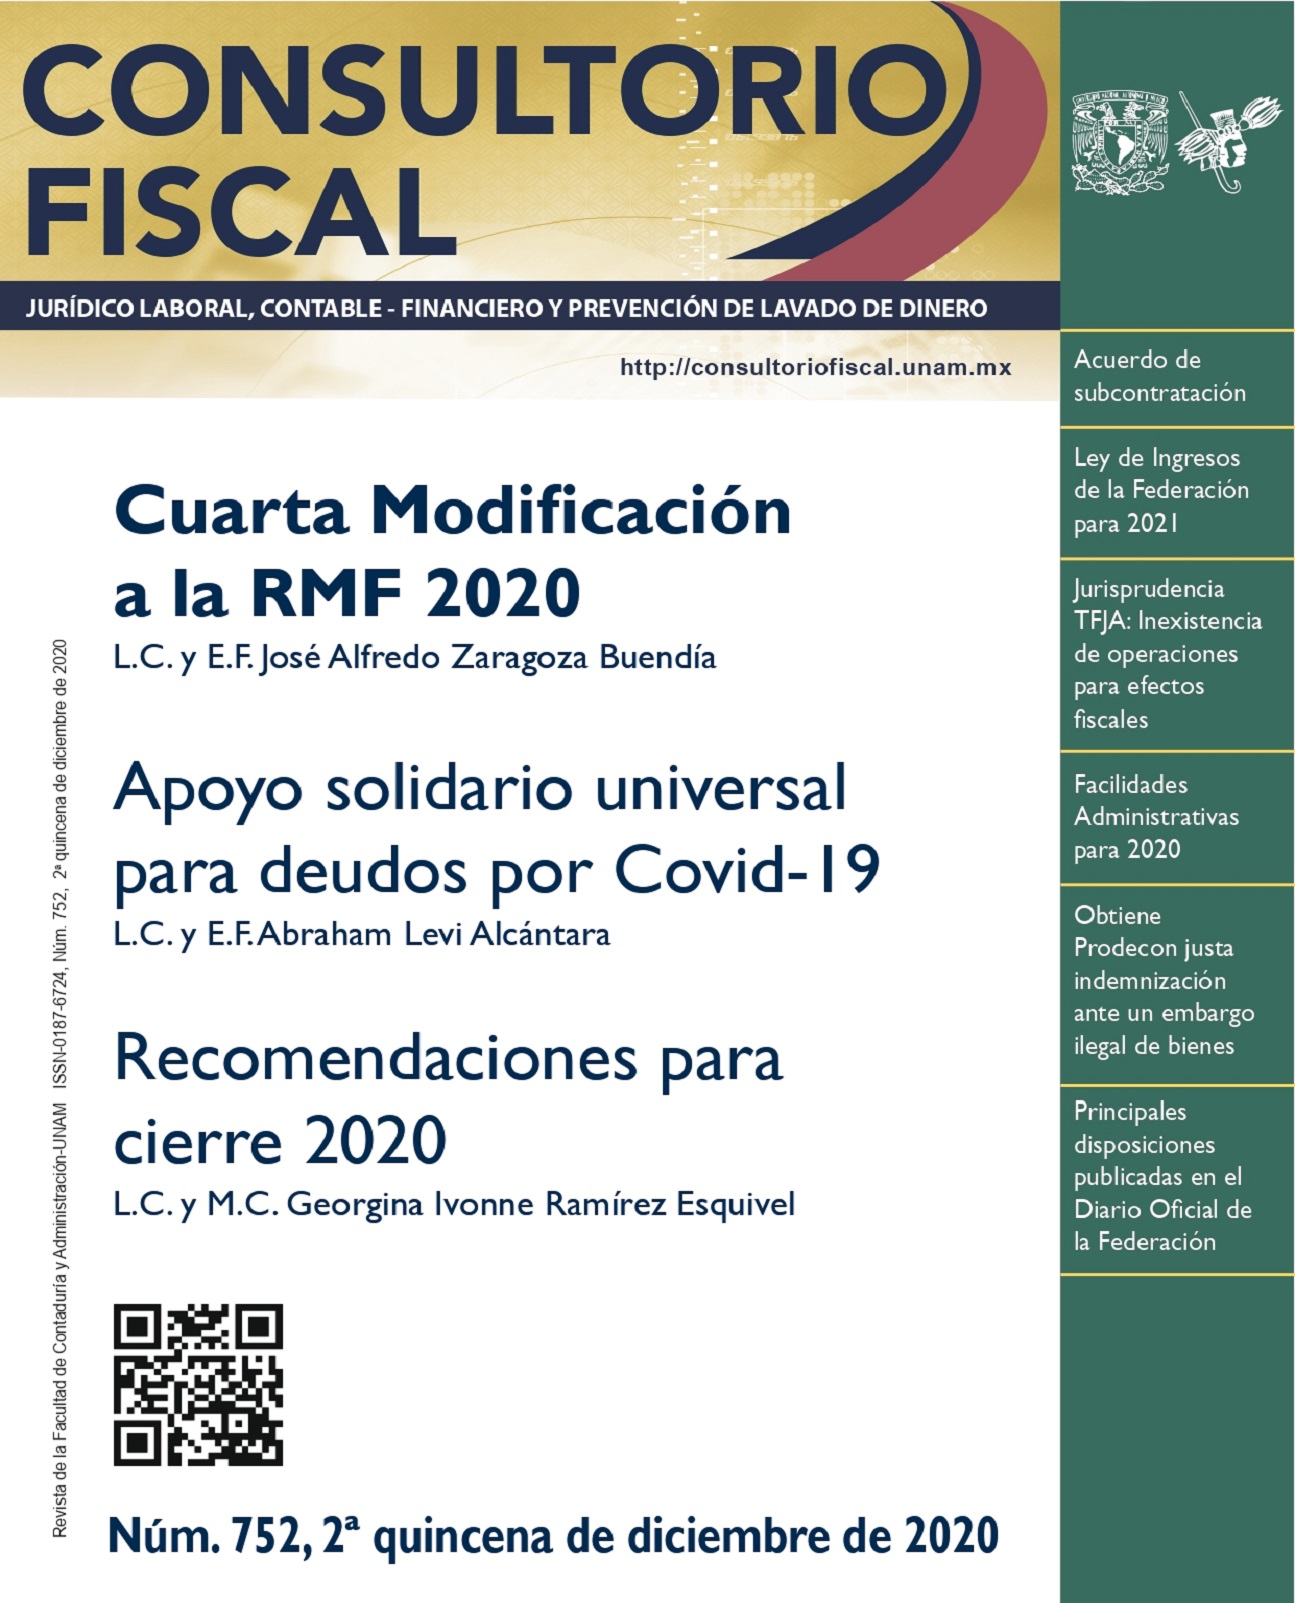 Cuarta modificación a la RMF 2020